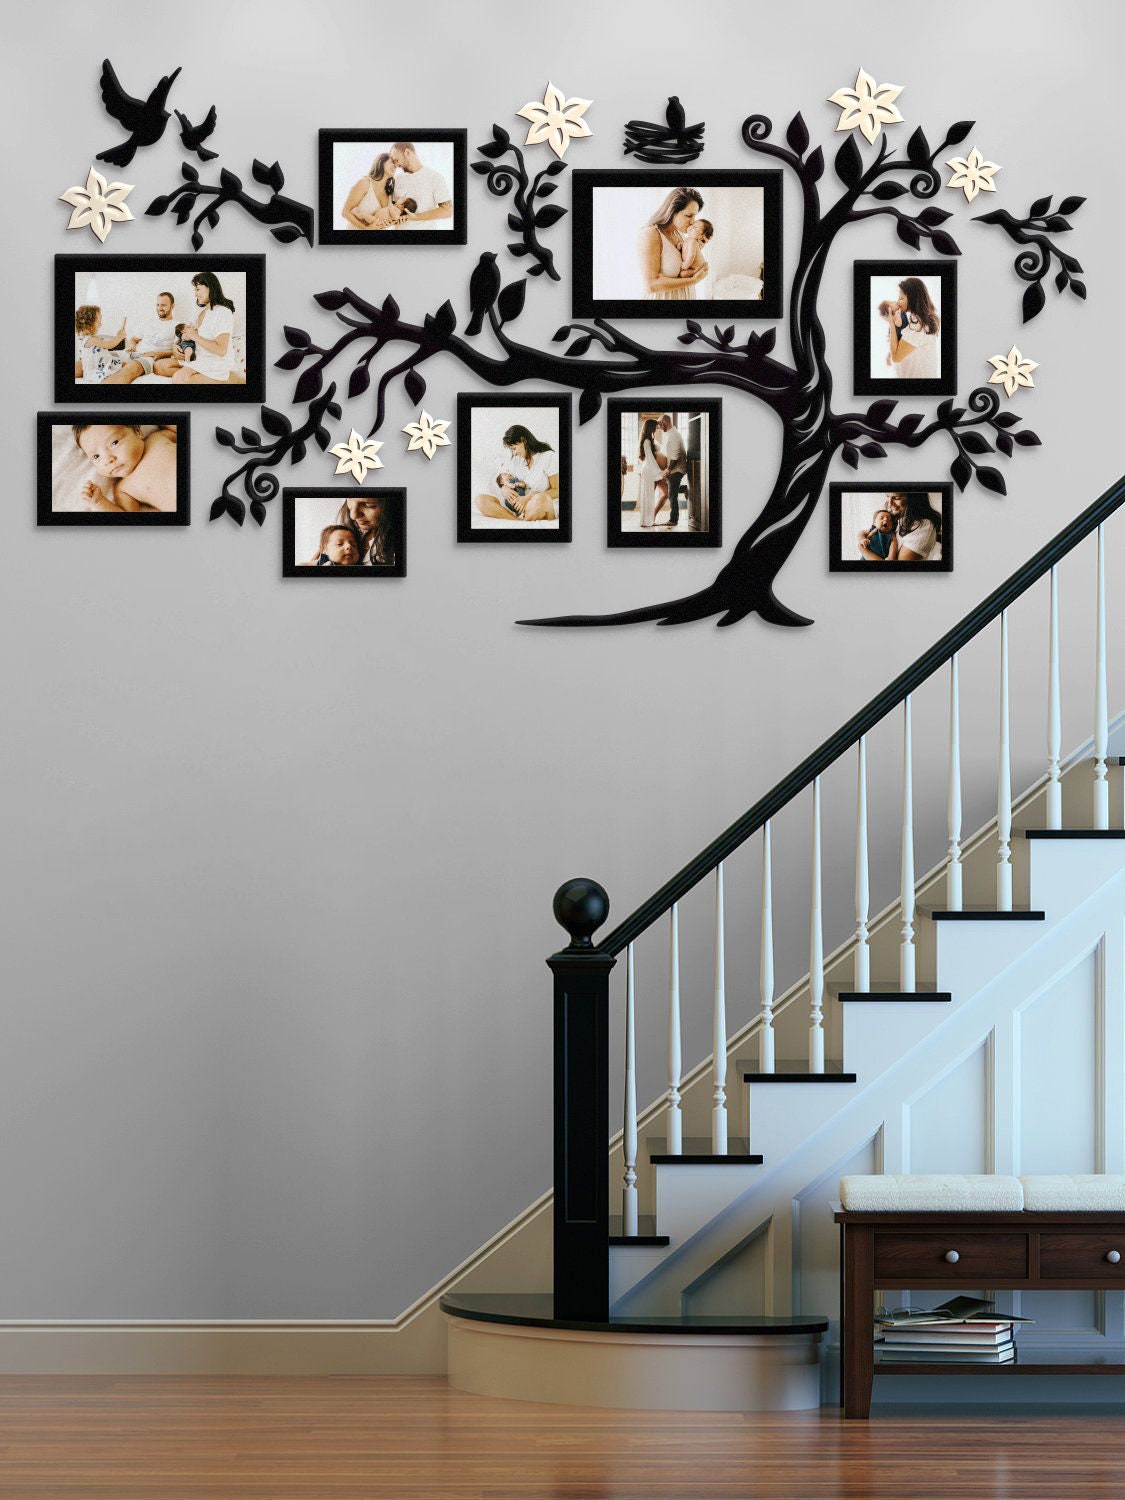 Vinilo decorativo para pared de árbol genealógico grande, marco de fotos  negro para decoración de pared de árbol, calcomanía mural, decoración